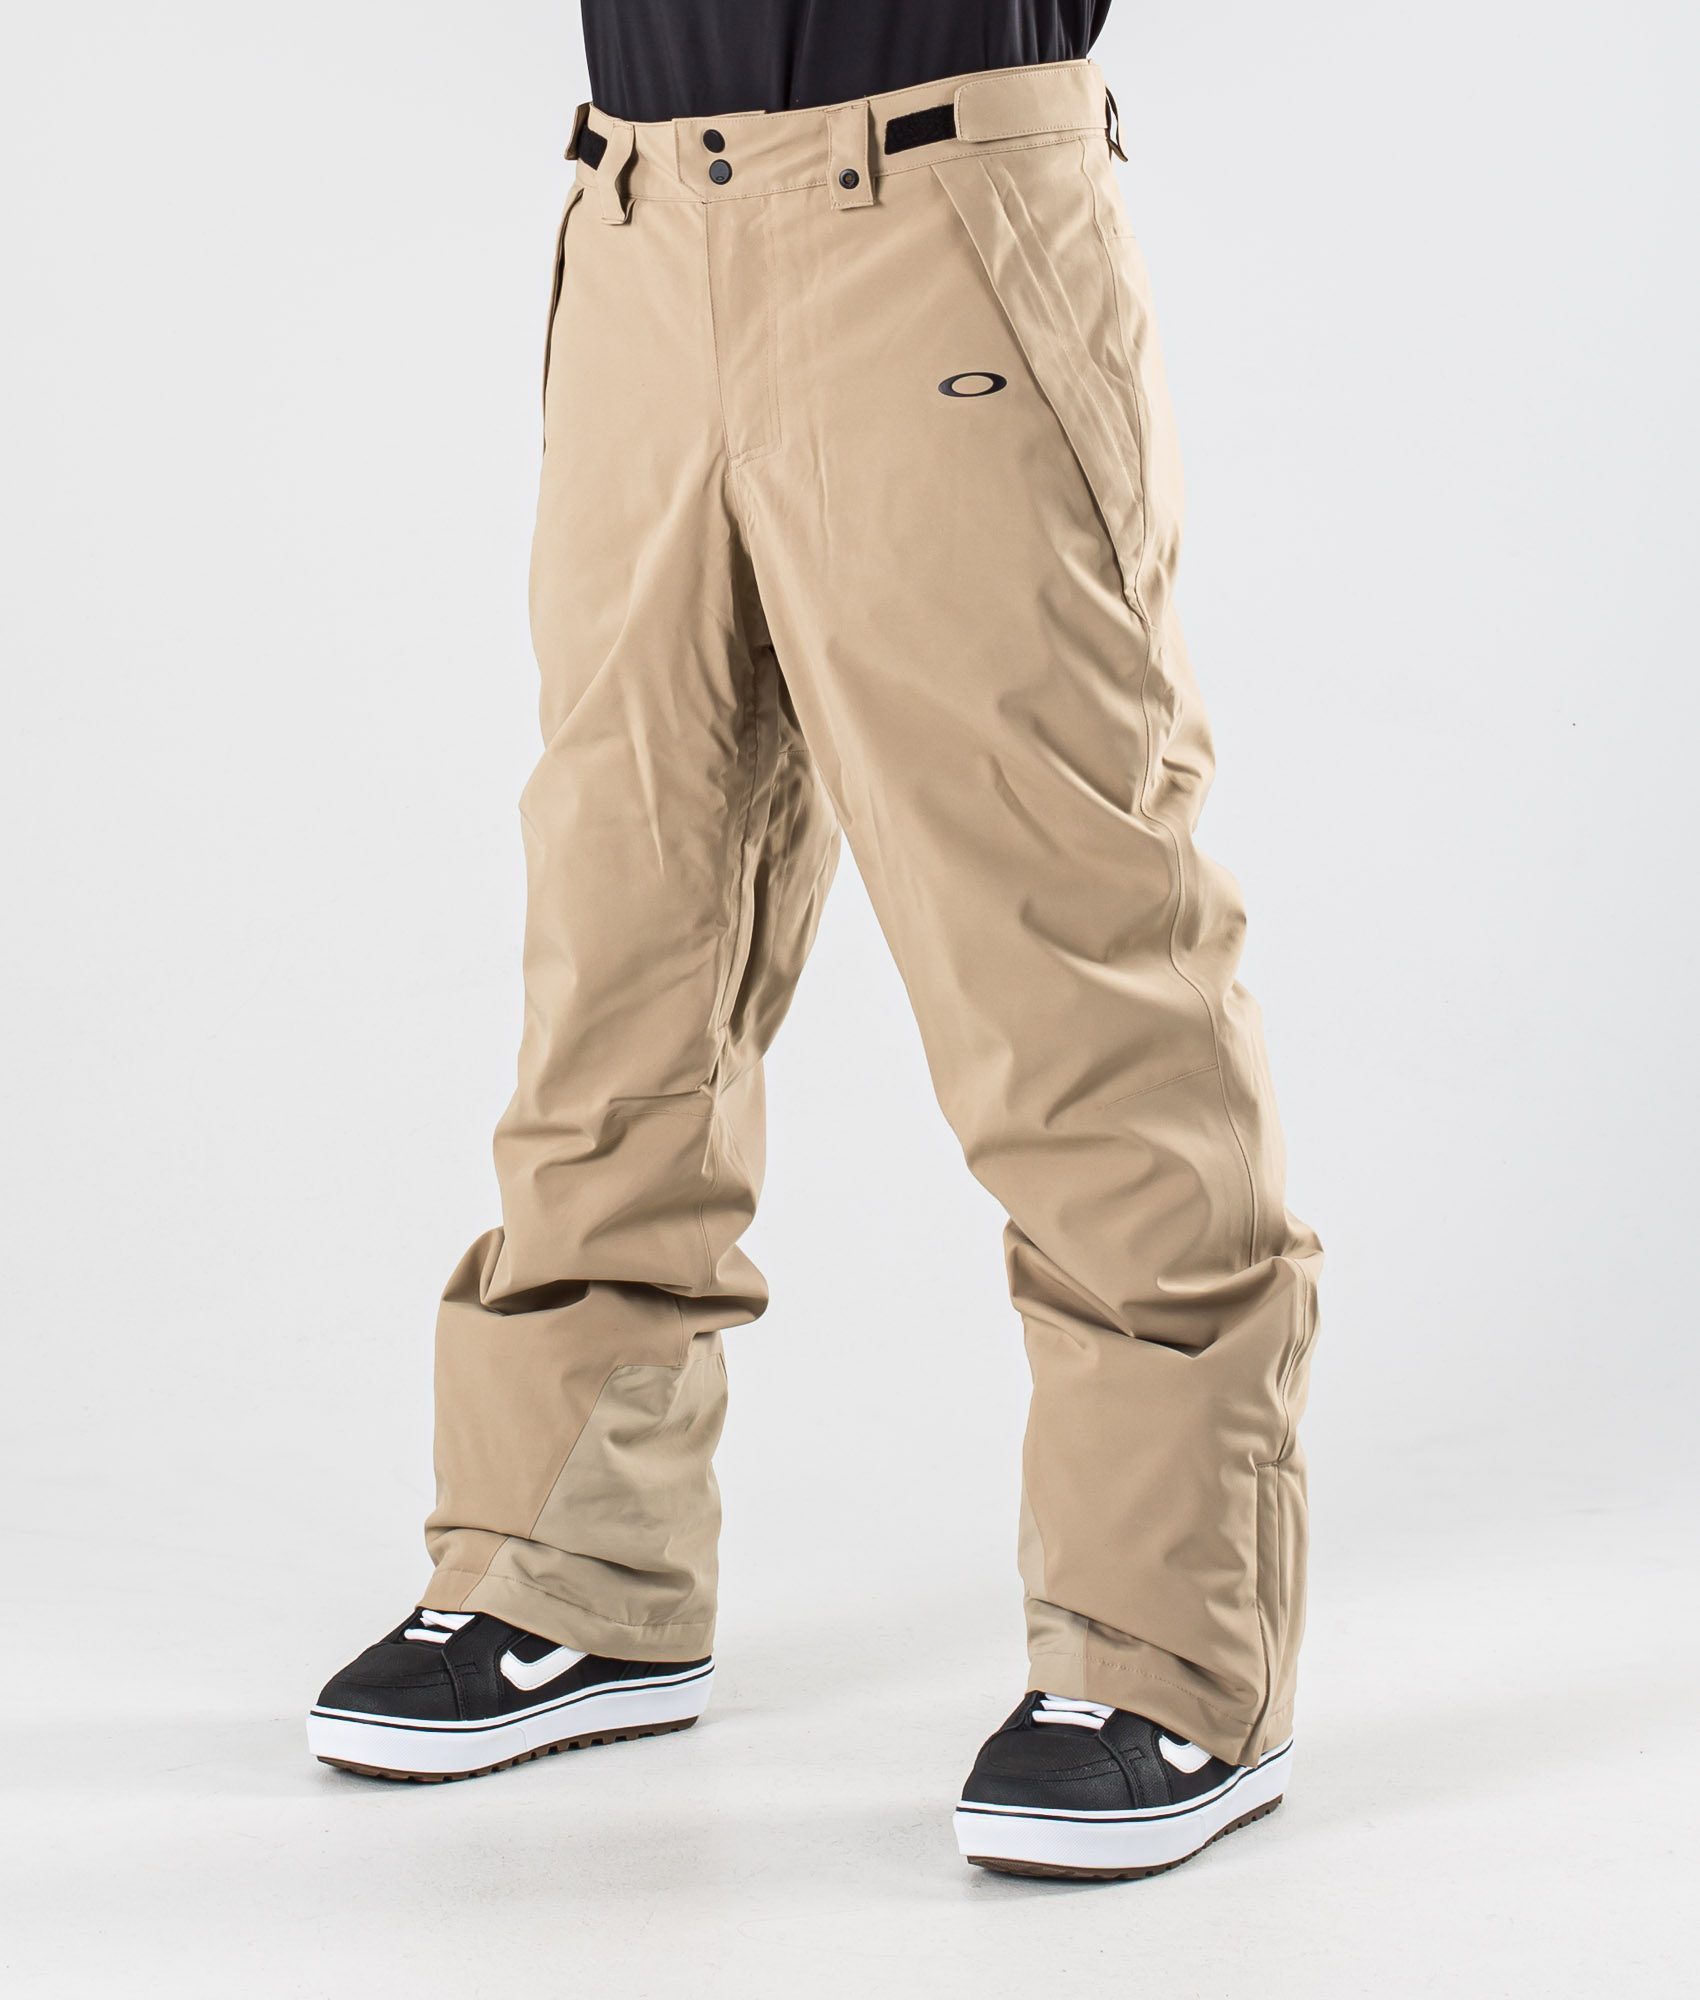 oakley snowboard pants